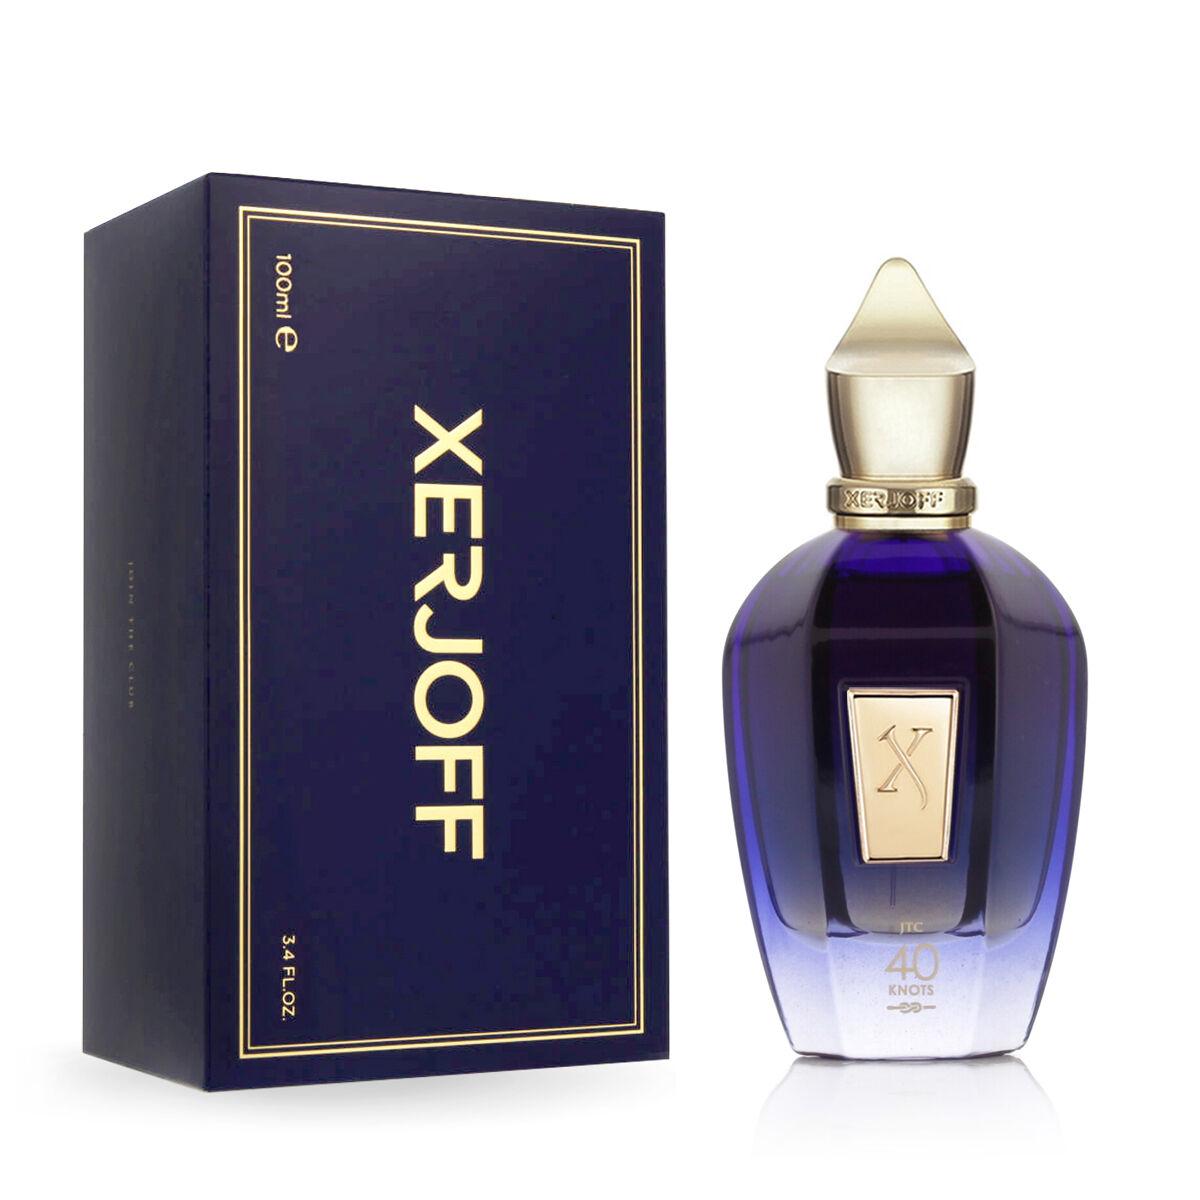 Unisex parfume Xerjoff EDP Join The Club 40 Knots (100 ml)